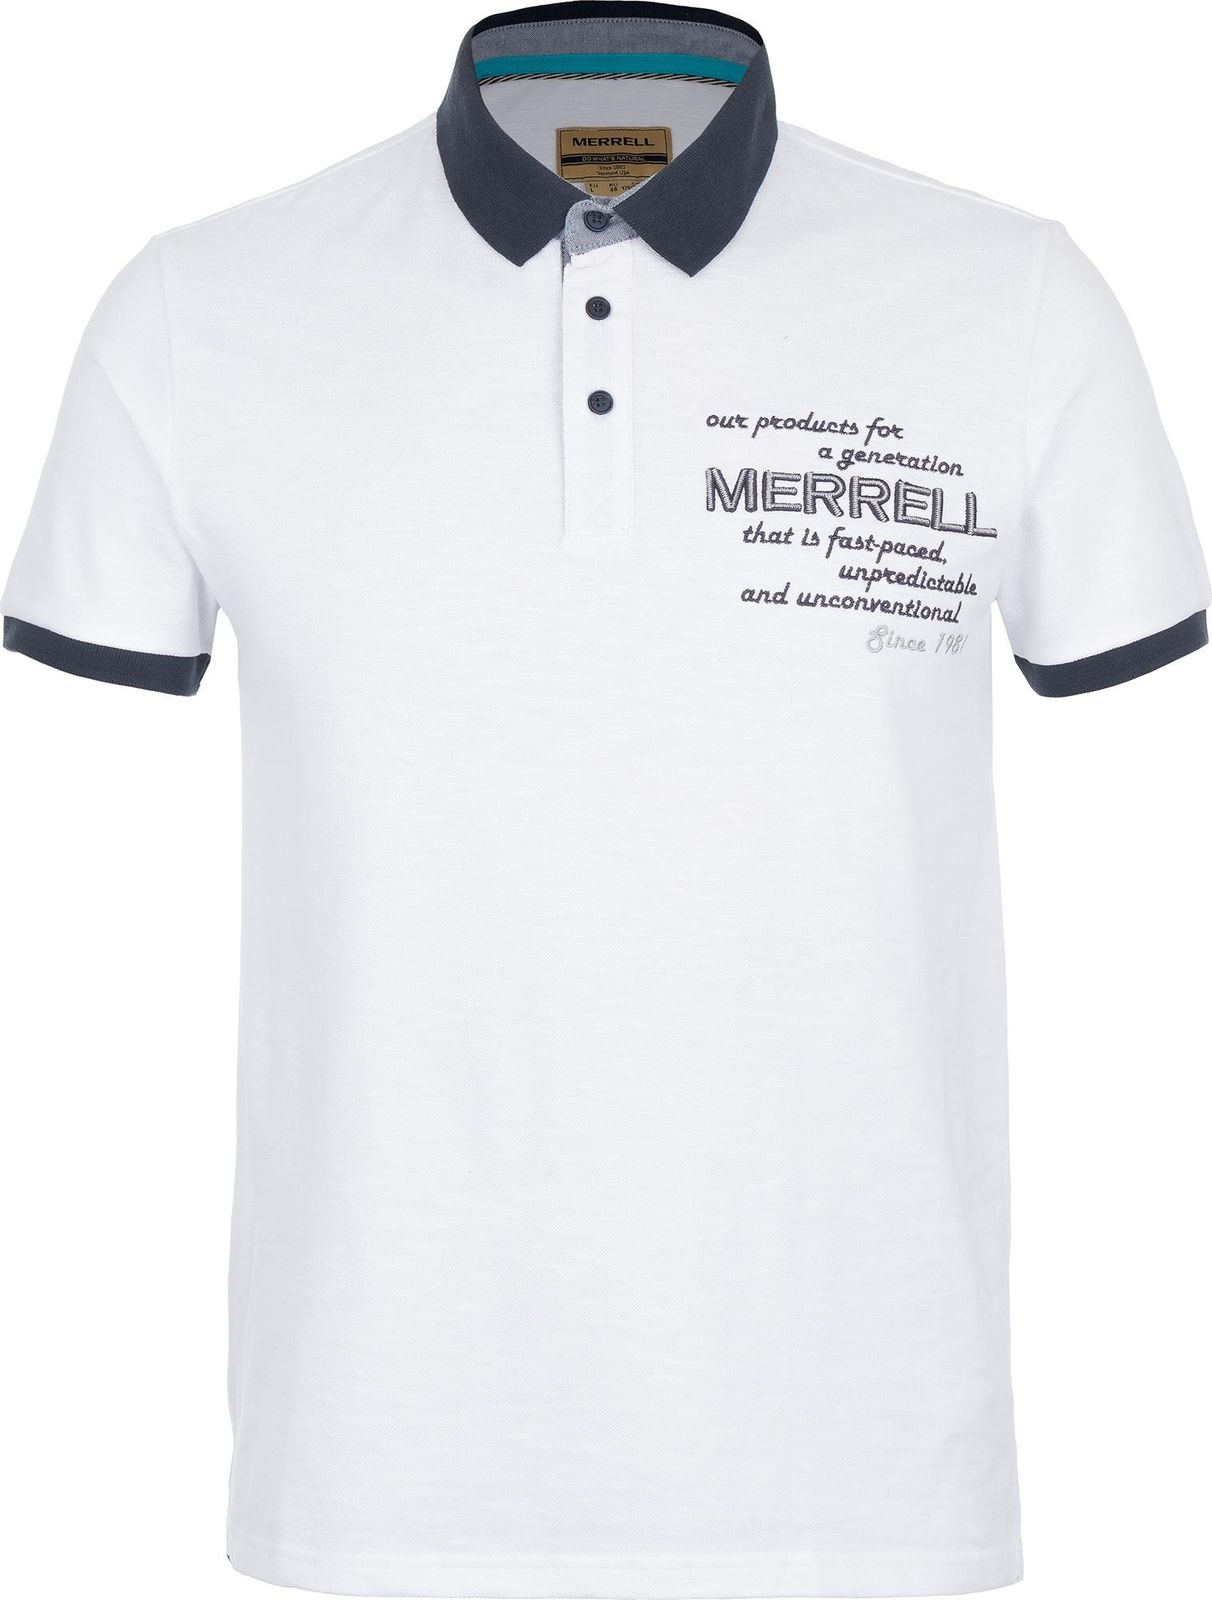   Merrell Men's Polo, : . S17AMRPOM01-00.  58